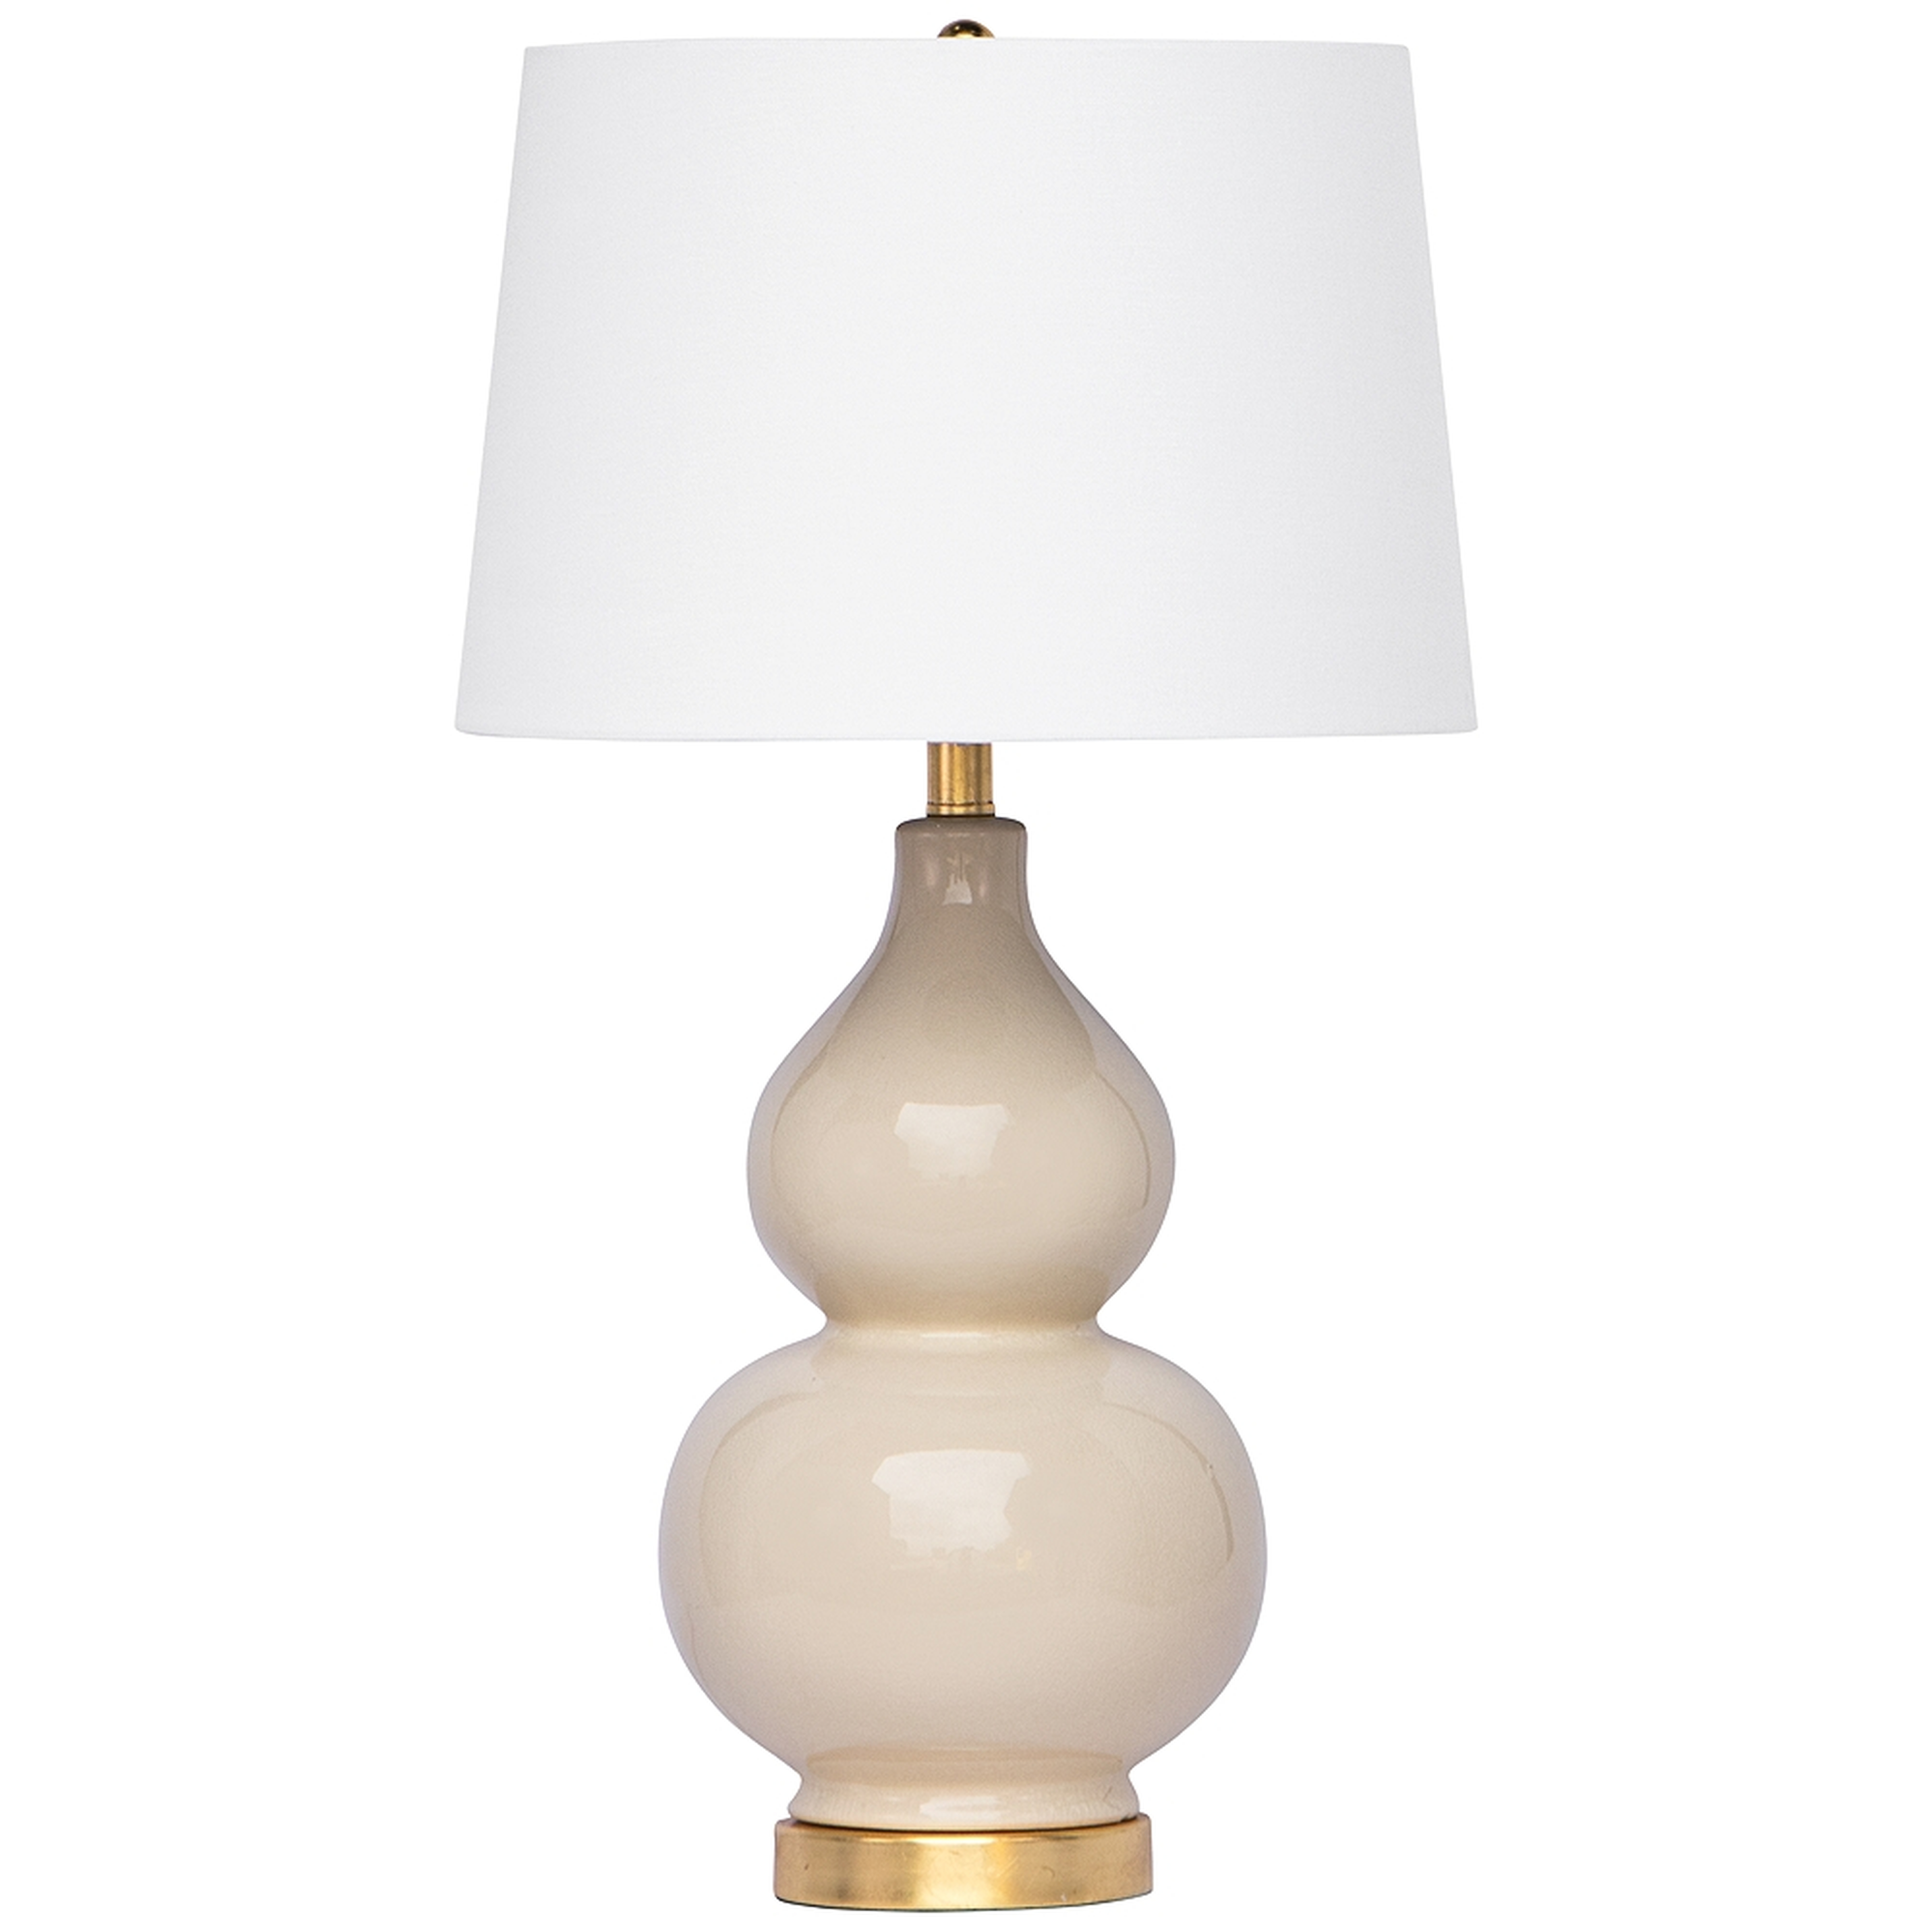 Regina Andrew Design Madison Ivory Ceramic Table Lamp - Style # 55R89 - Lamps Plus